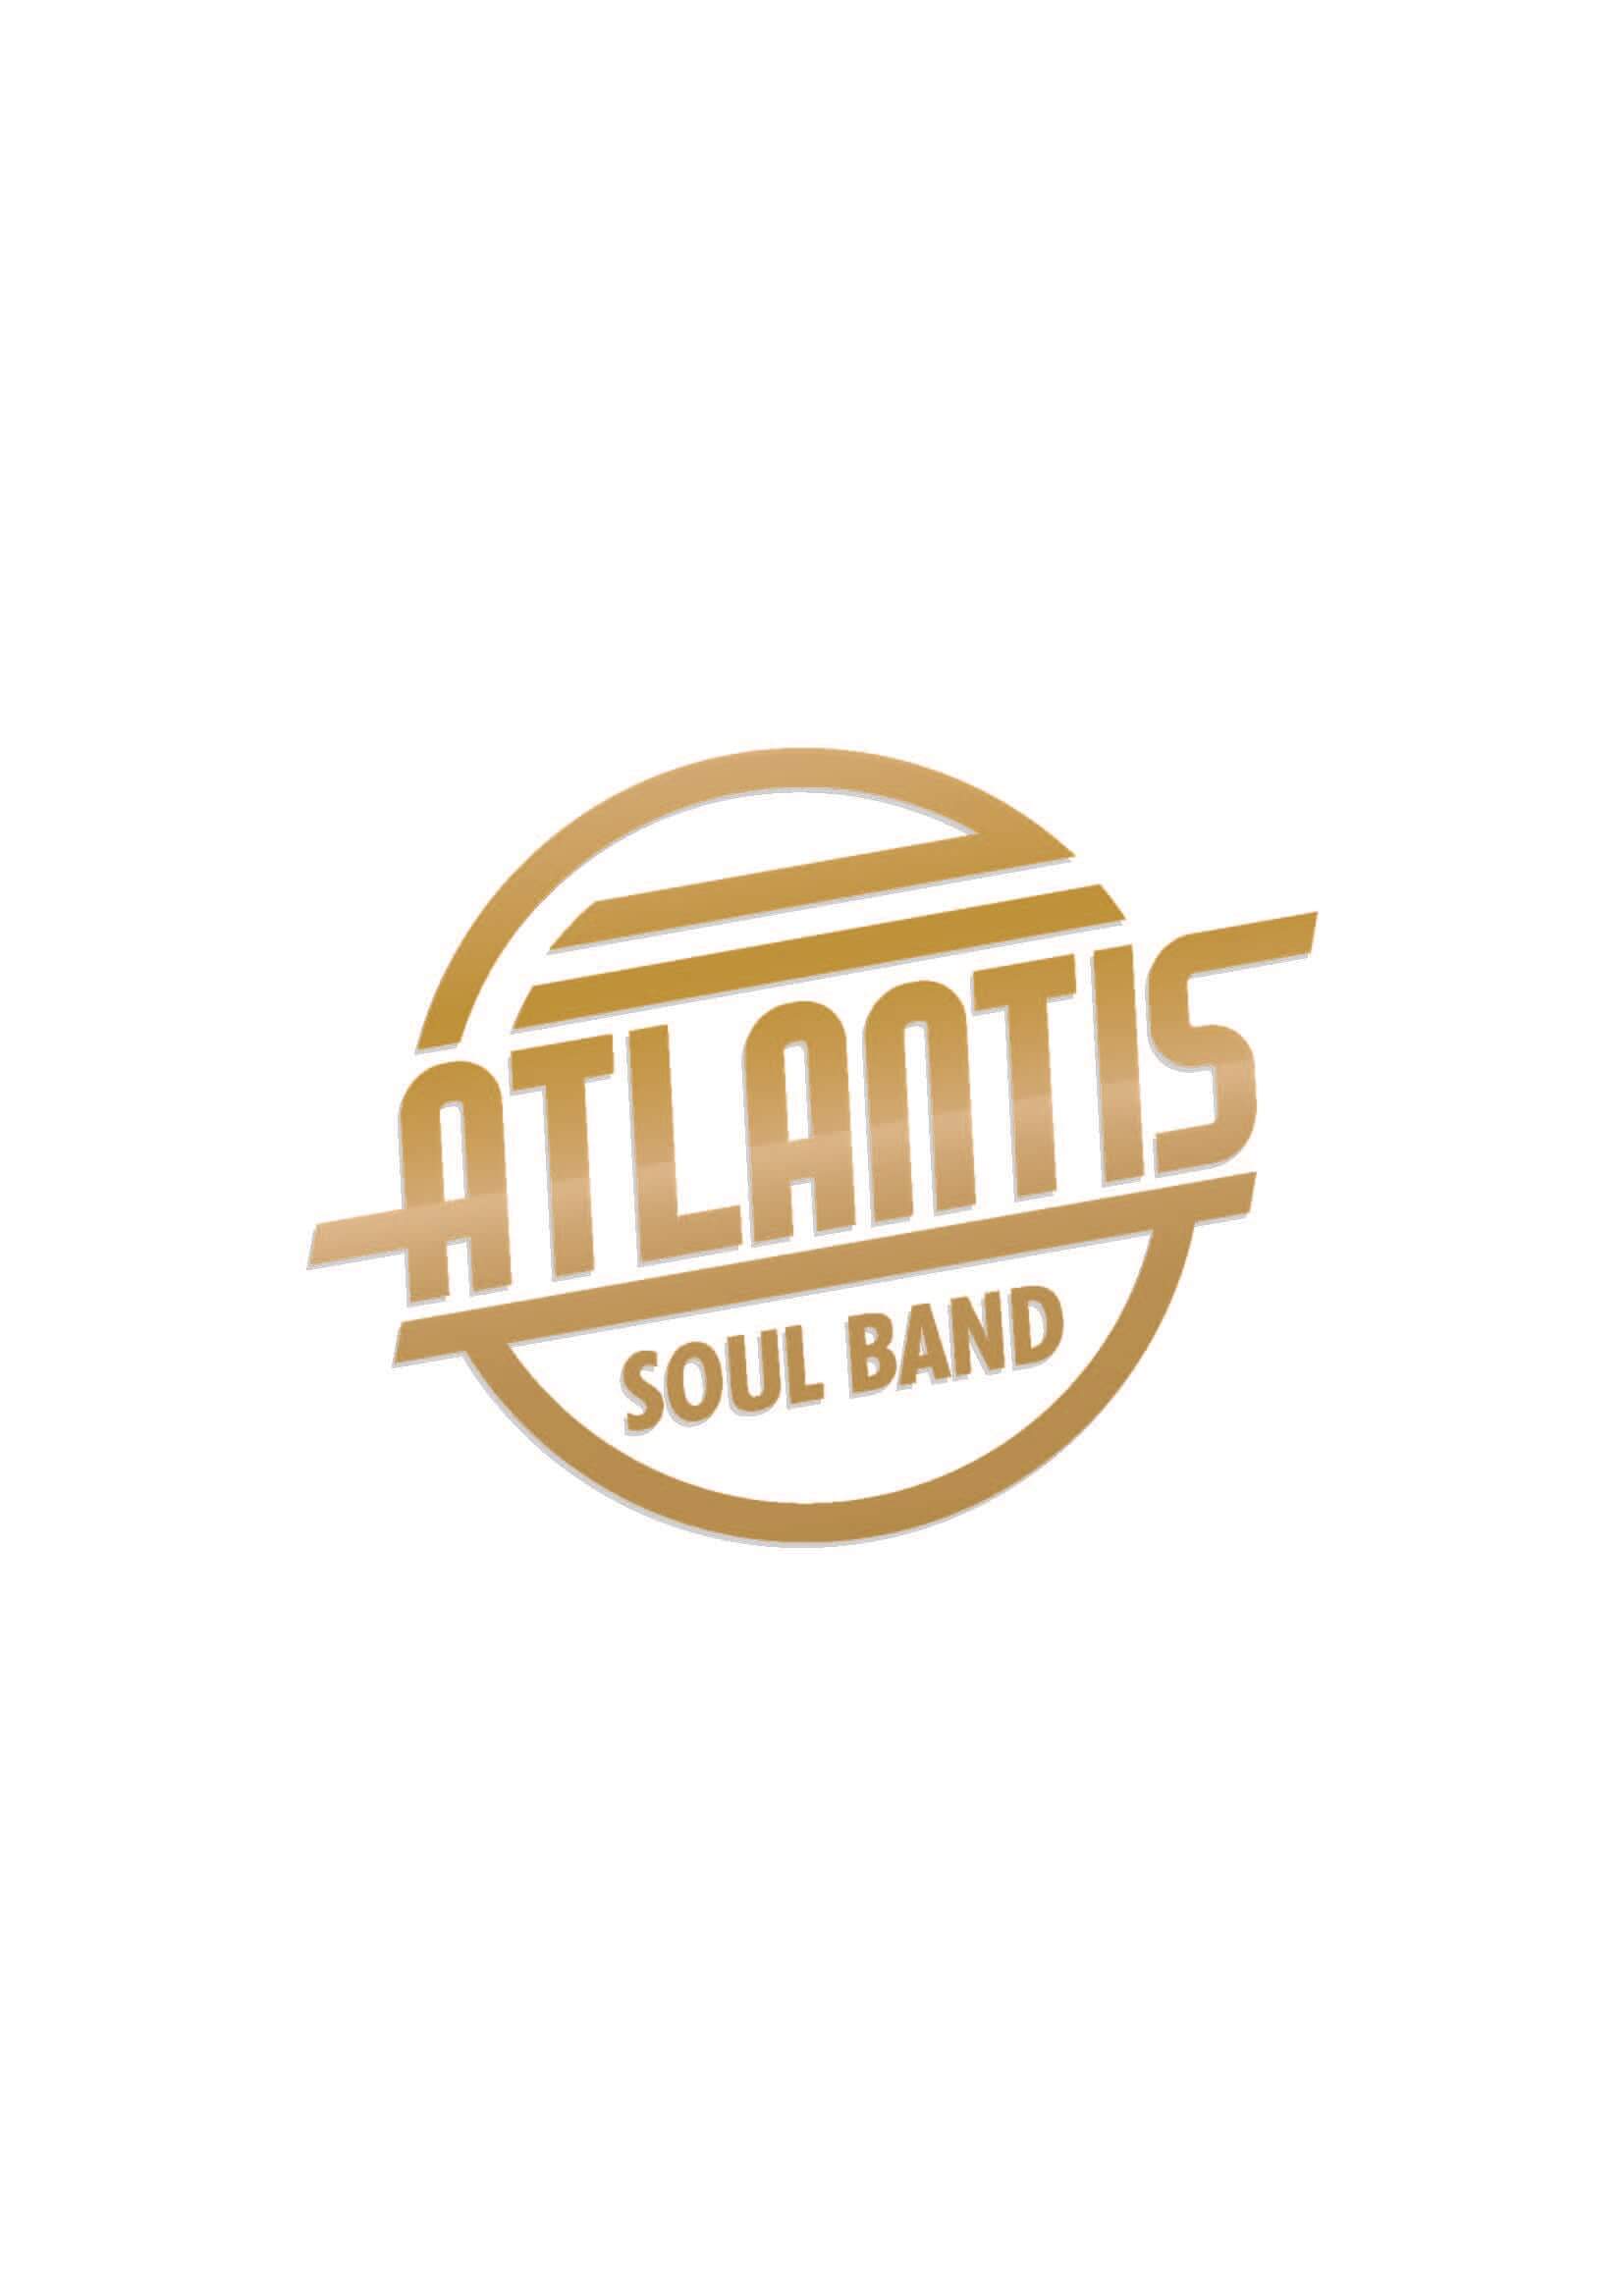 Bandlogo: »Atlantis Soul Band«